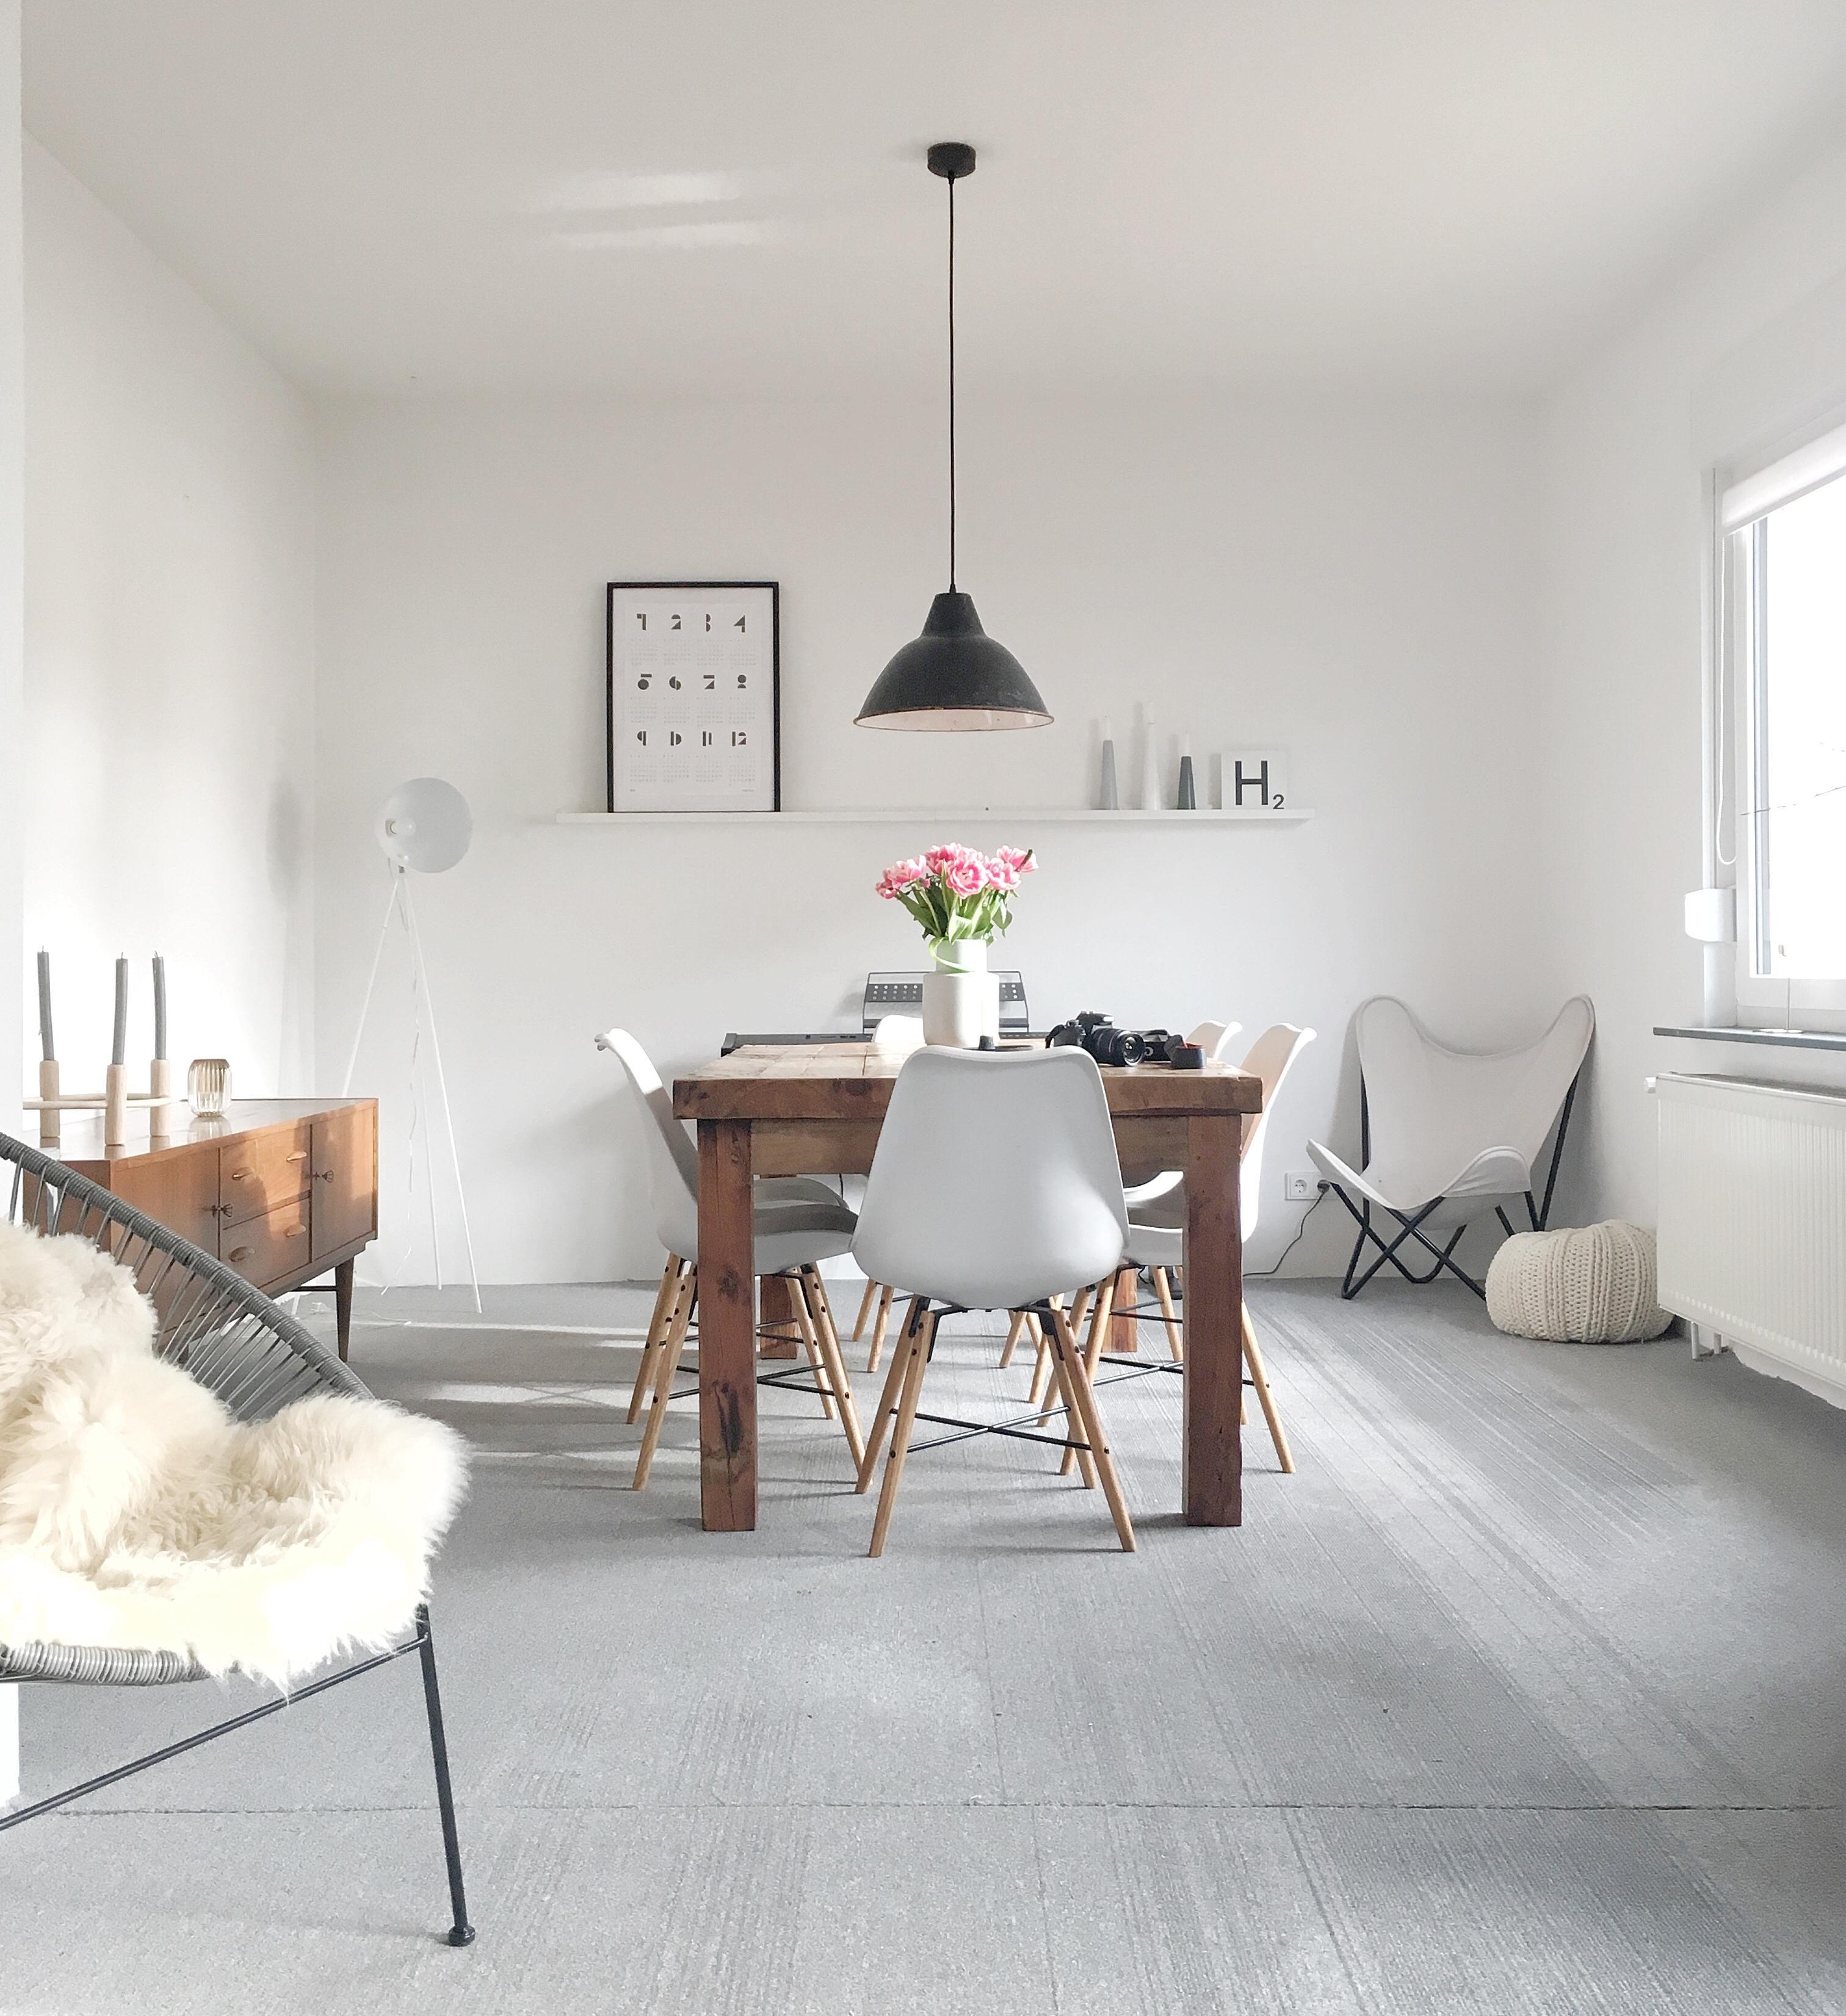 Lieblingsmotiv und Herzstück des Hauses. Noch unsaniert - unser Wohnzimmer. #industrial #minimal #scandinavian #vintage